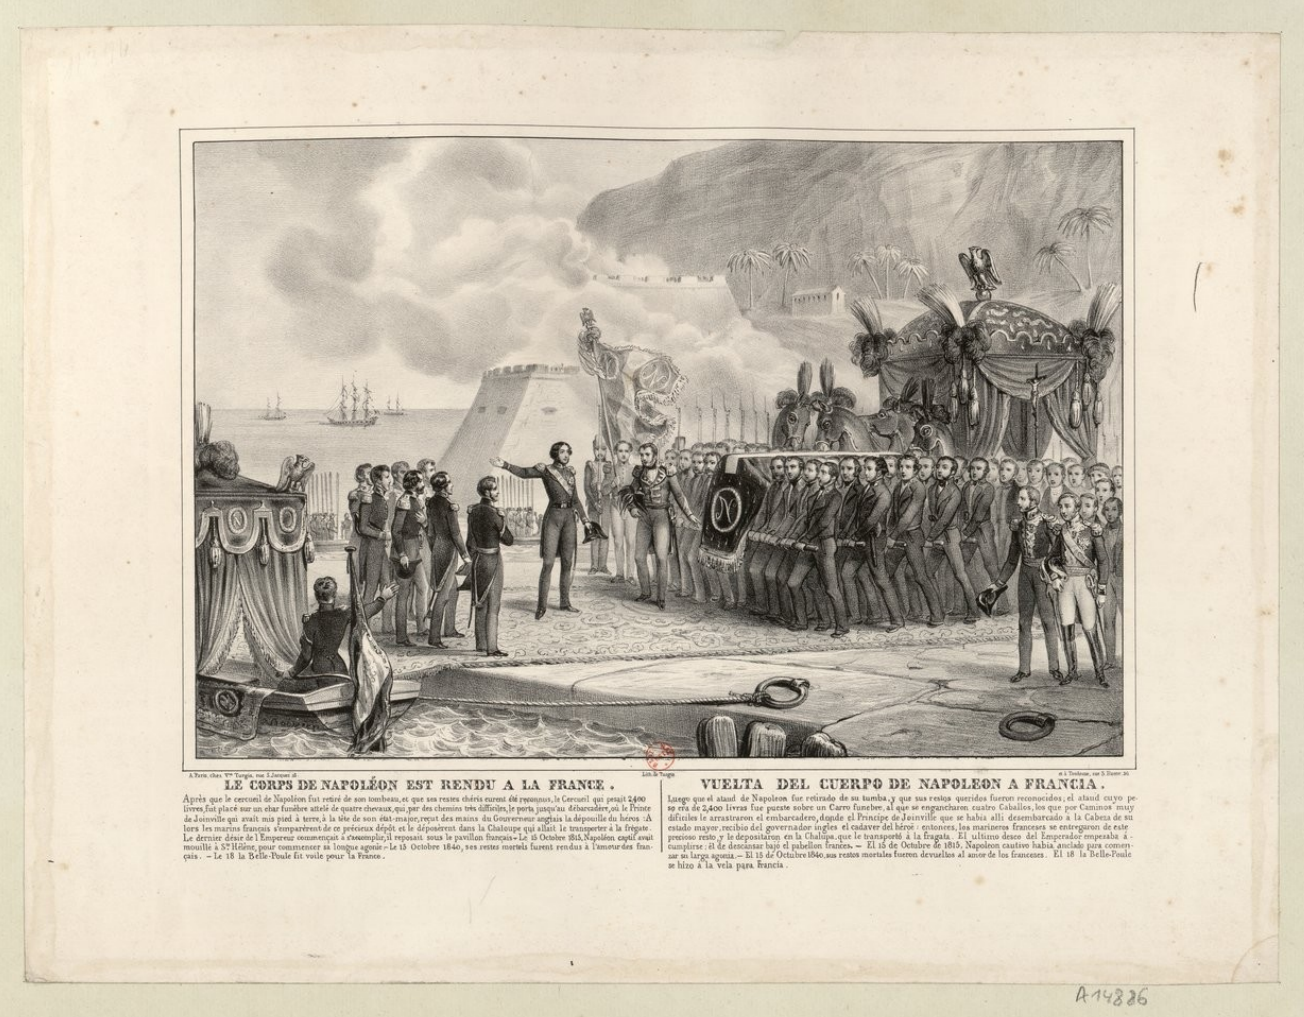 Le corps de Napoléon est rendu à la France, estampe, Paris, Turgis, 1841. 